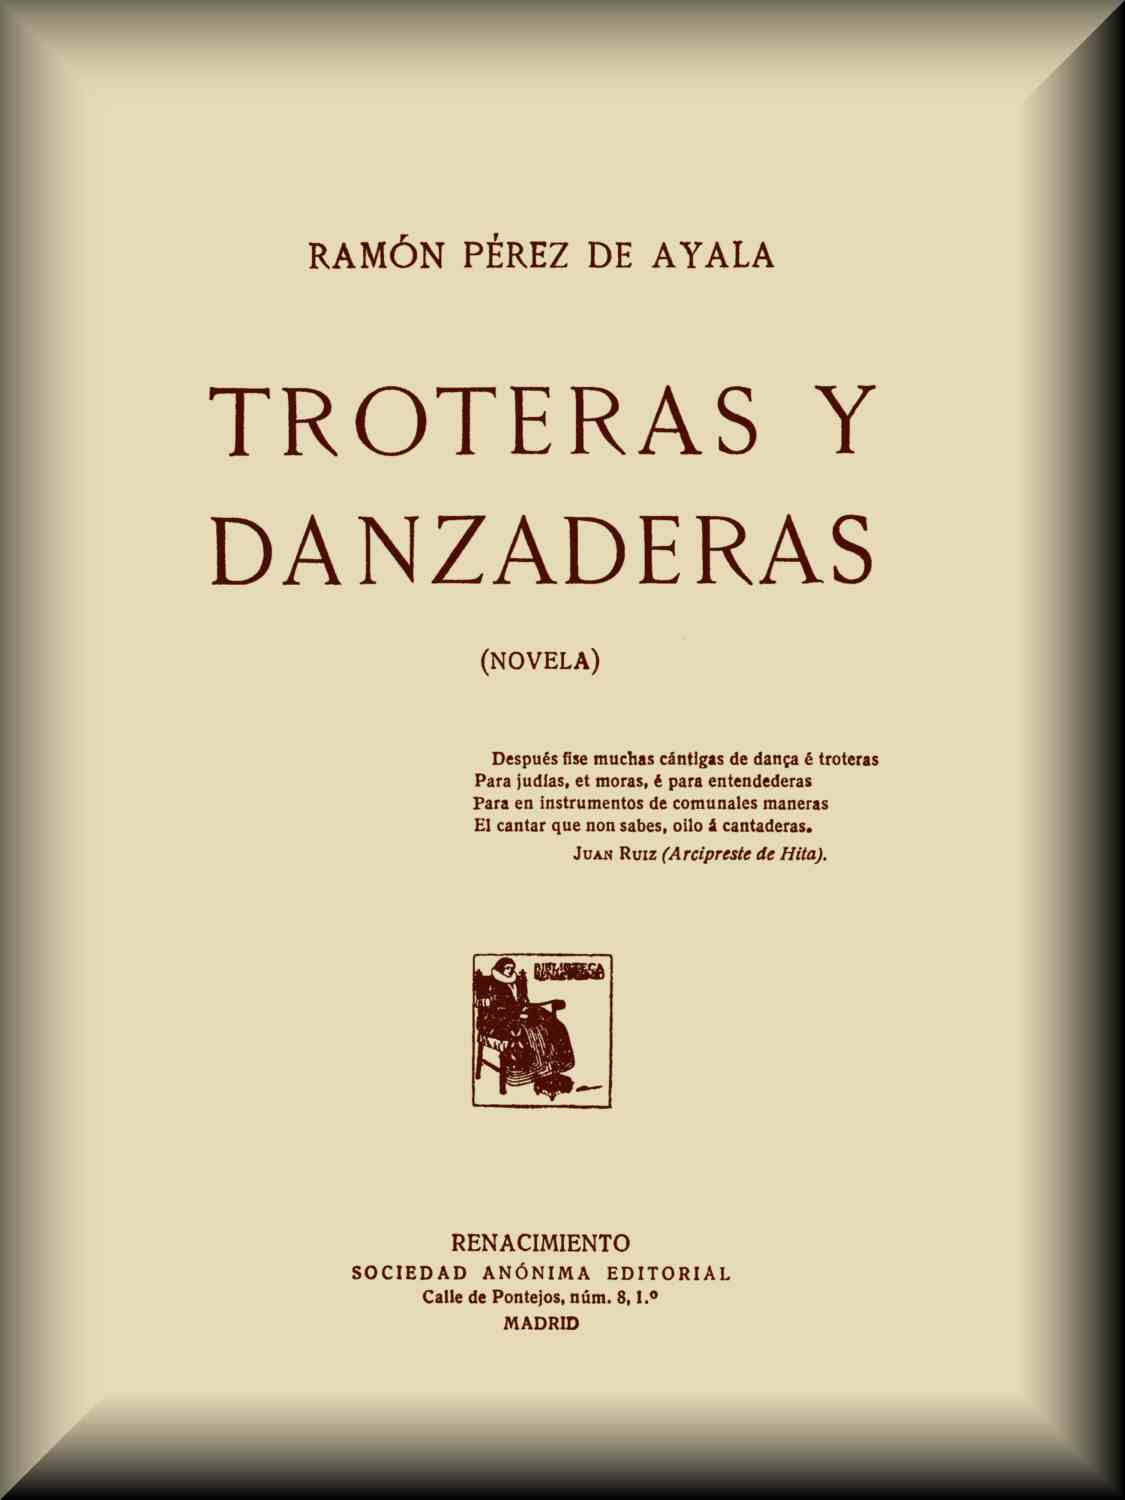 Reorganizar Mayo Acera Troteras y danzaderas, by Ramón Pérez de Ayala—A Project Gutenberg eBook